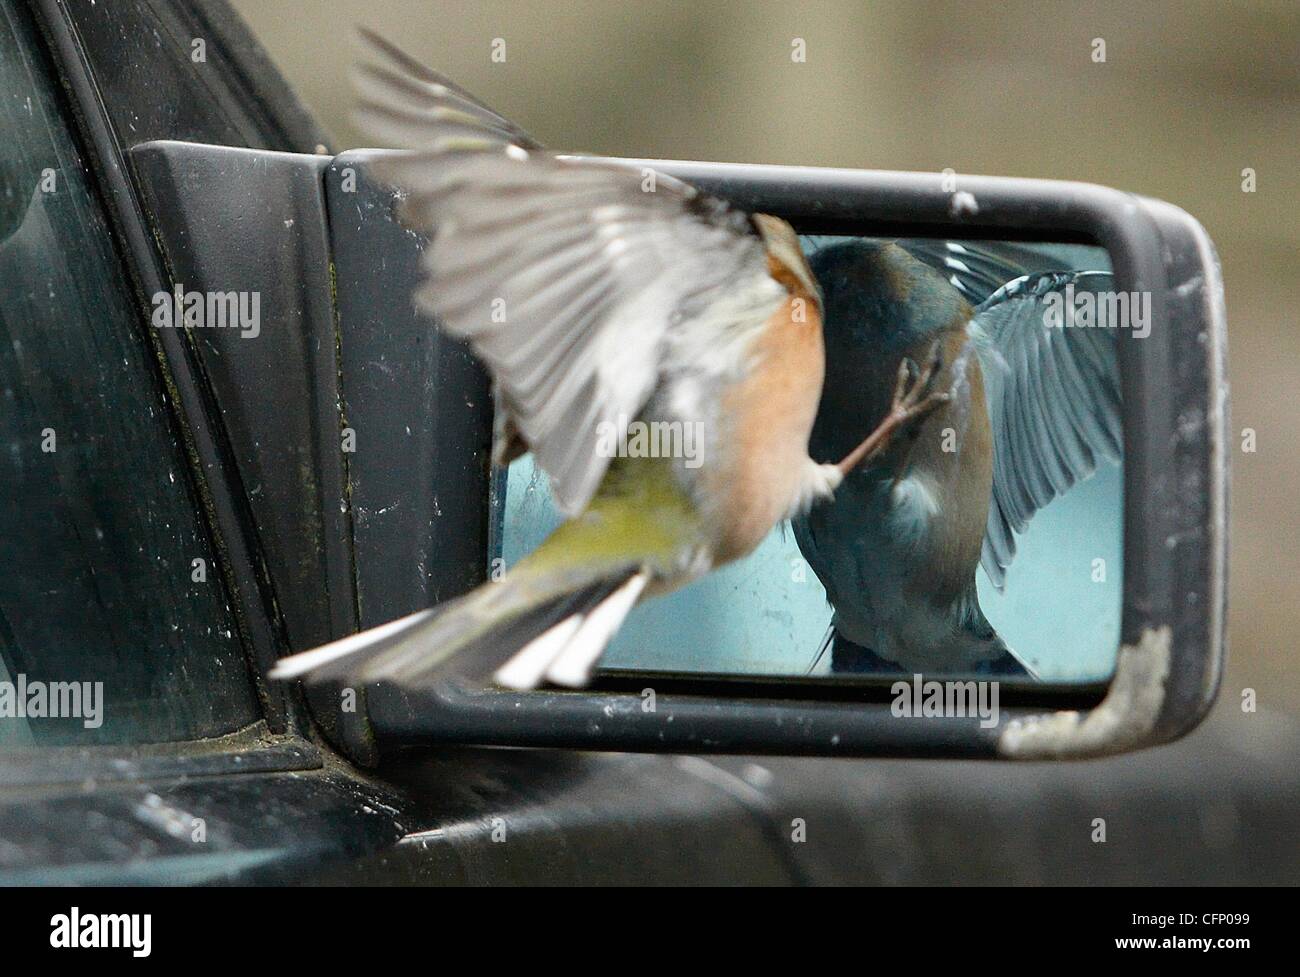 Dummer Vogel! Ein Buchfink pickt entfernt an seine Spiegelung im Fenster  und Flügel Autospiegel. England - Februar 2011 Stockfotografie - Alamy